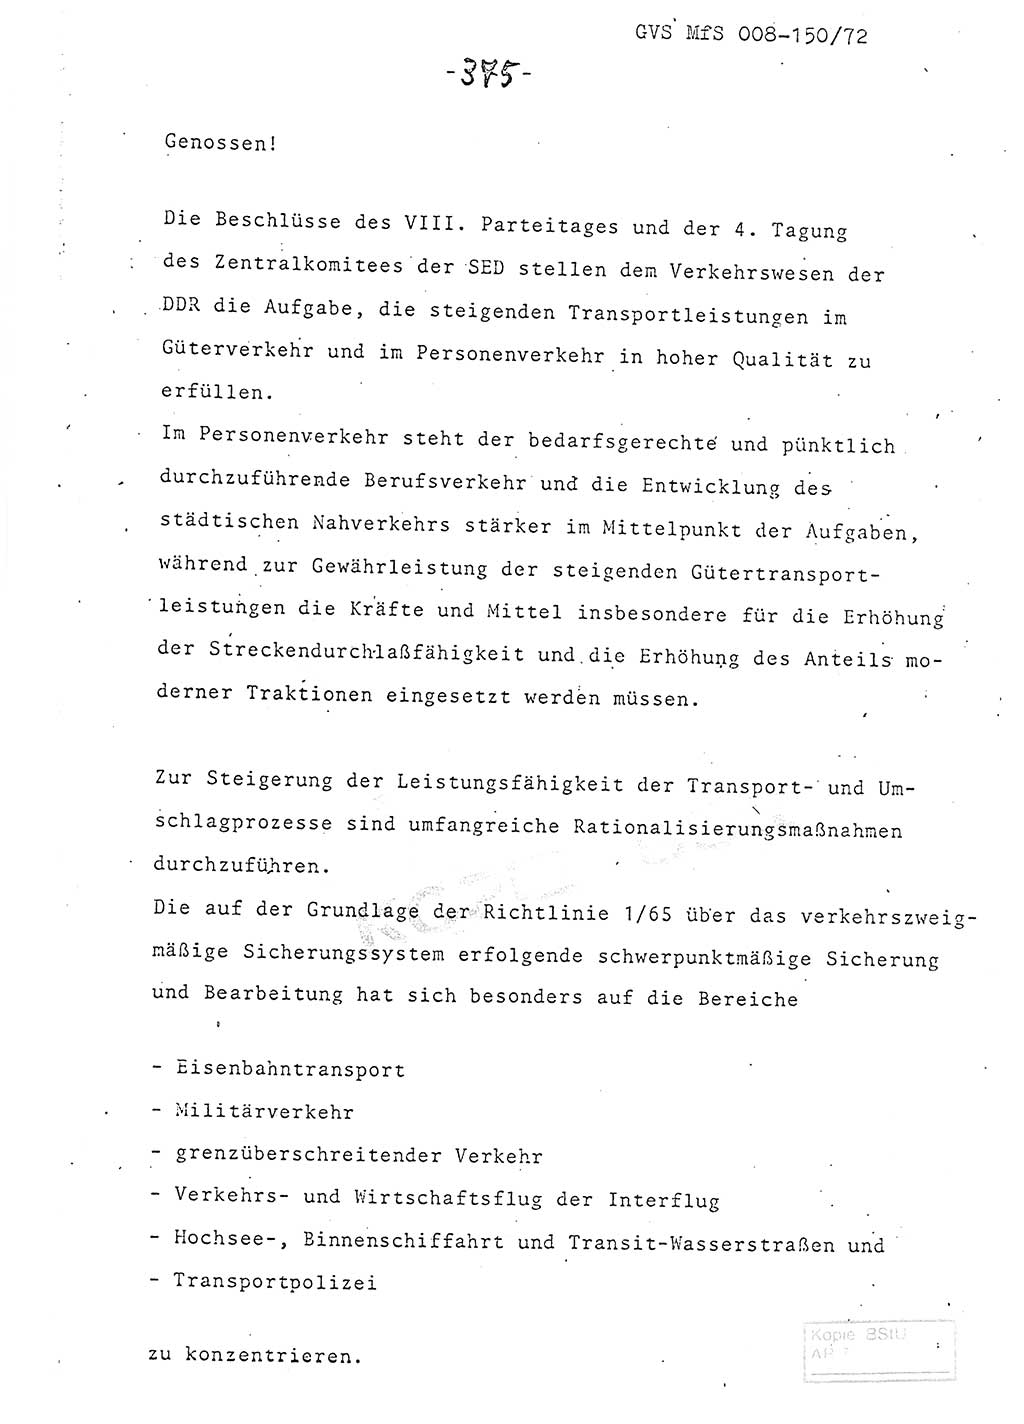 Referat (Entwurf) des Genossen Minister (Generaloberst Erich Mielke) auf der Dienstkonferenz 1972, Ministerium für Staatssicherheit (MfS) [Deutsche Demokratische Republik (DDR)], Der Minister, Geheime Verschlußsache (GVS) 008-150/72, Berlin 25.2.1972, Seite 375 (Ref. Entw. DK MfS DDR Min. GVS 008-150/72 1972, S. 375)